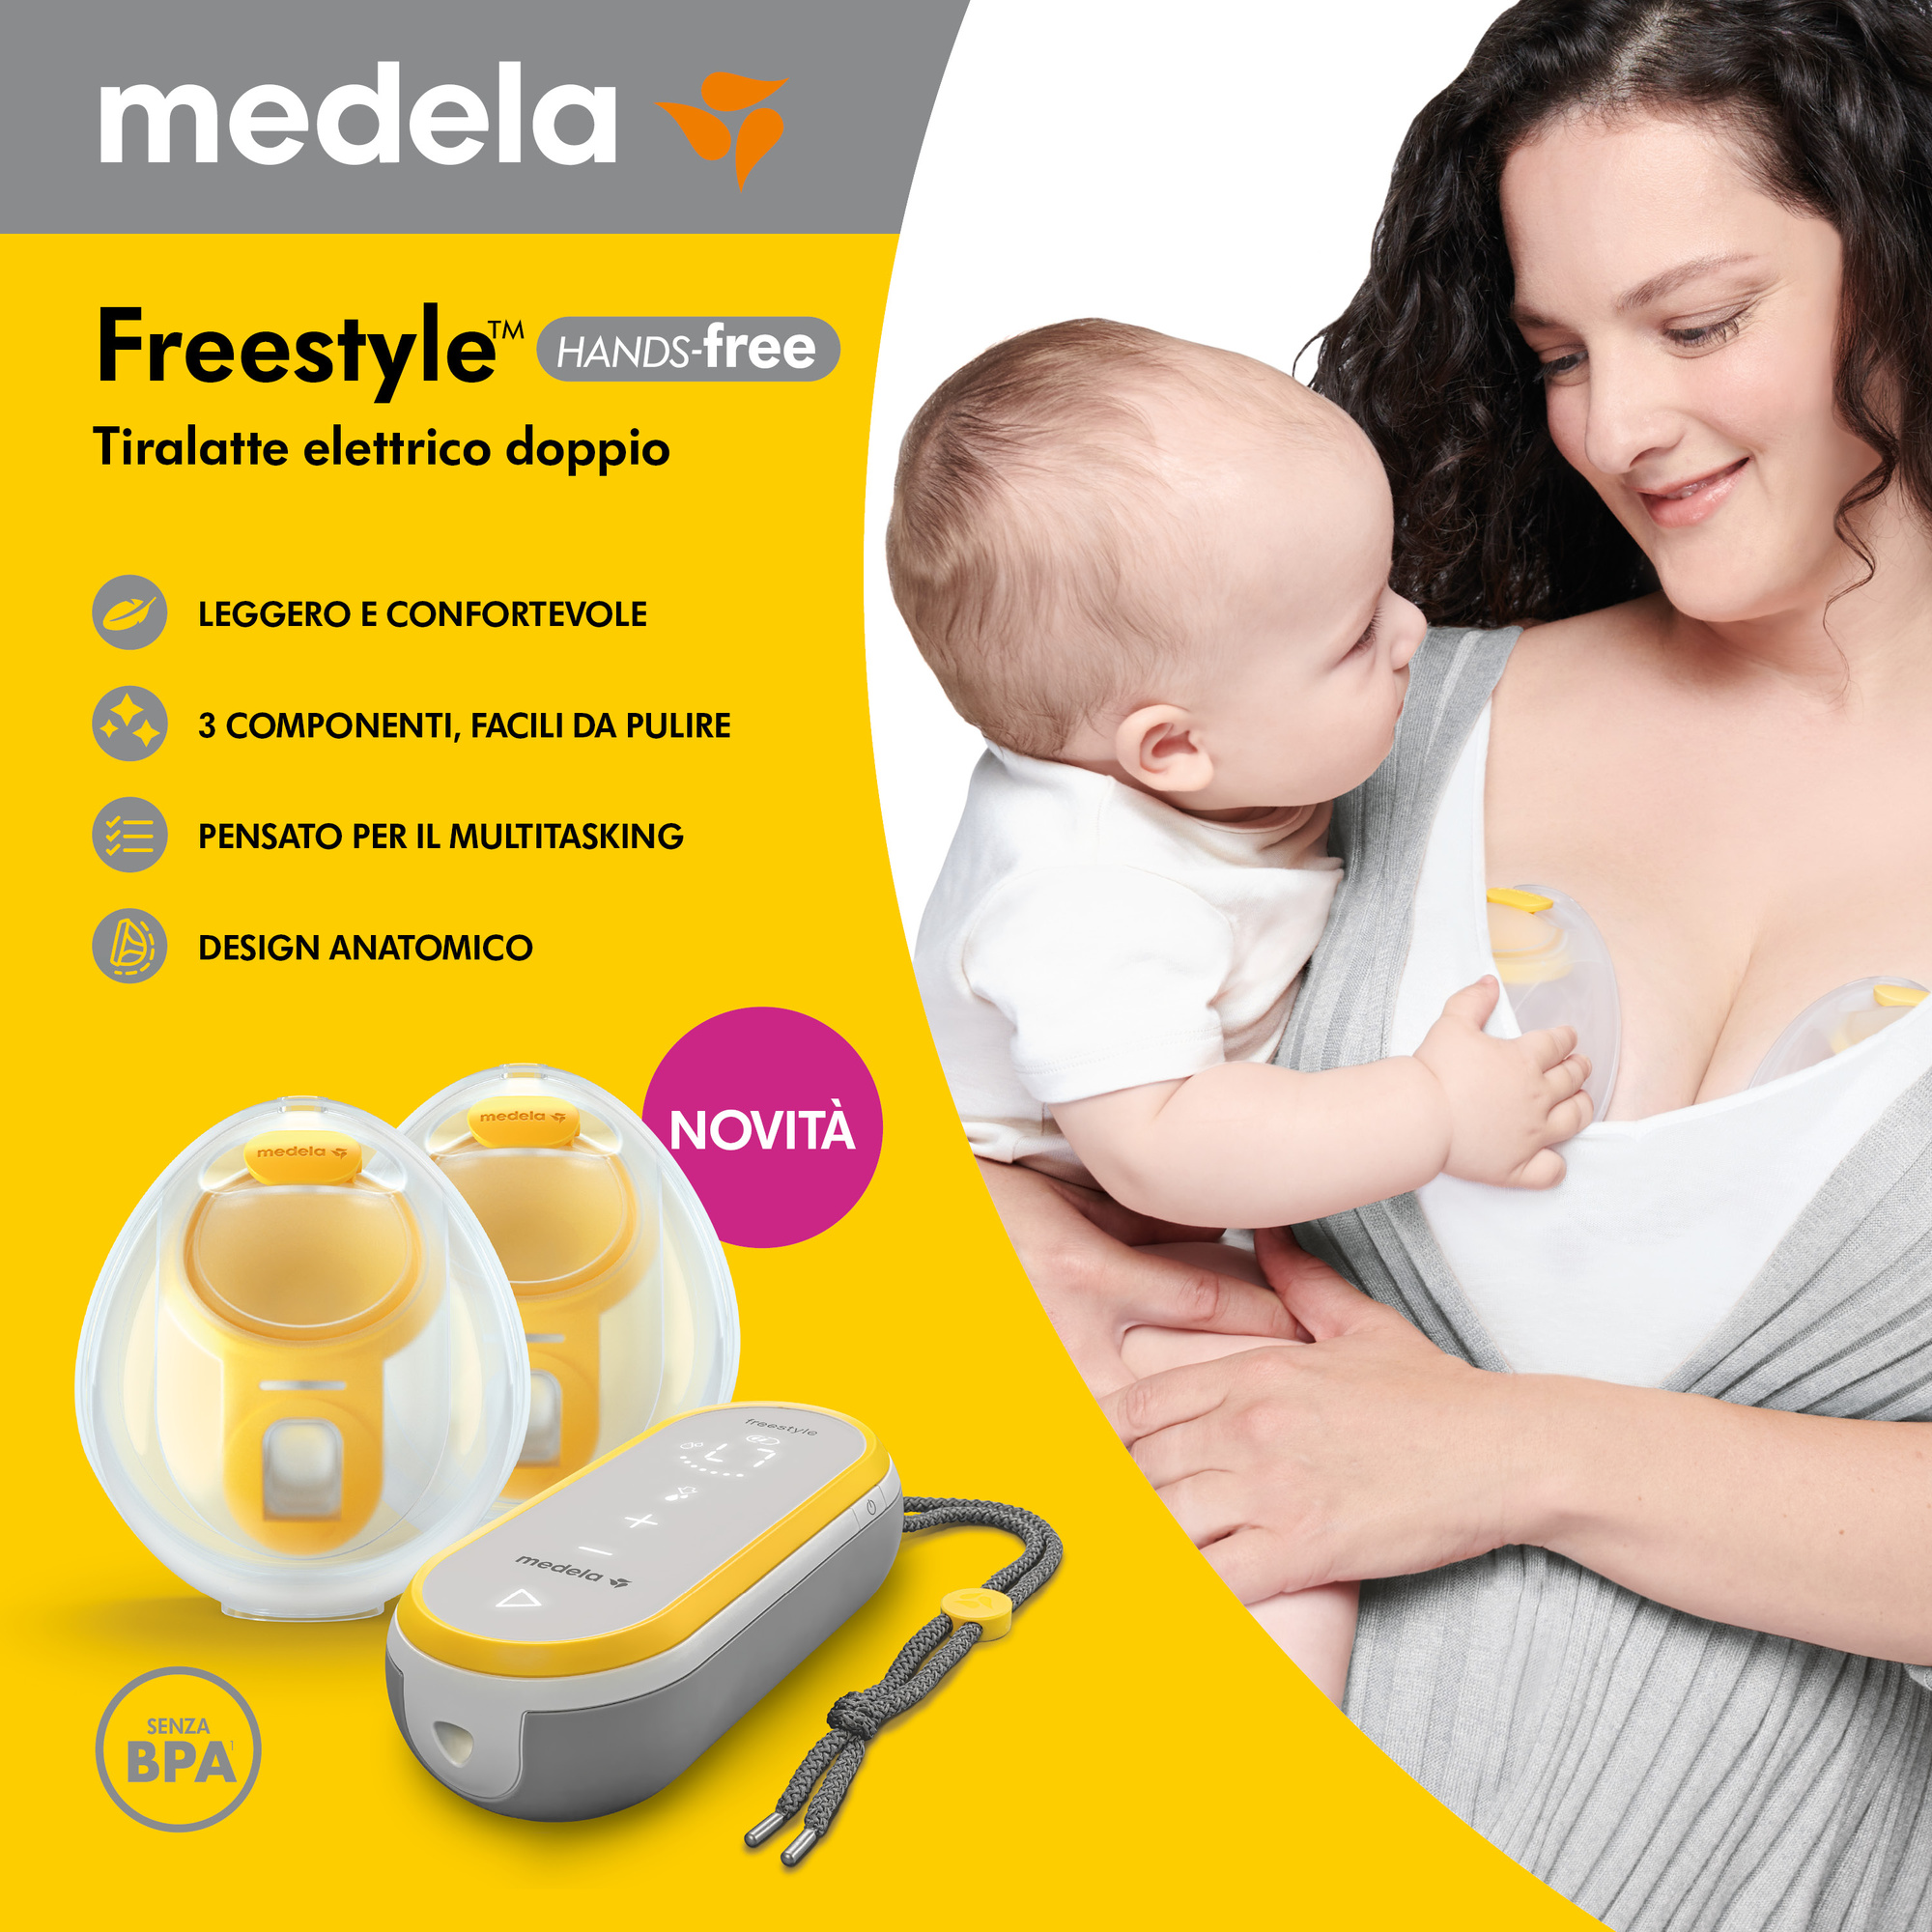 Medela- tiralatte freestyle hands-free - Medela